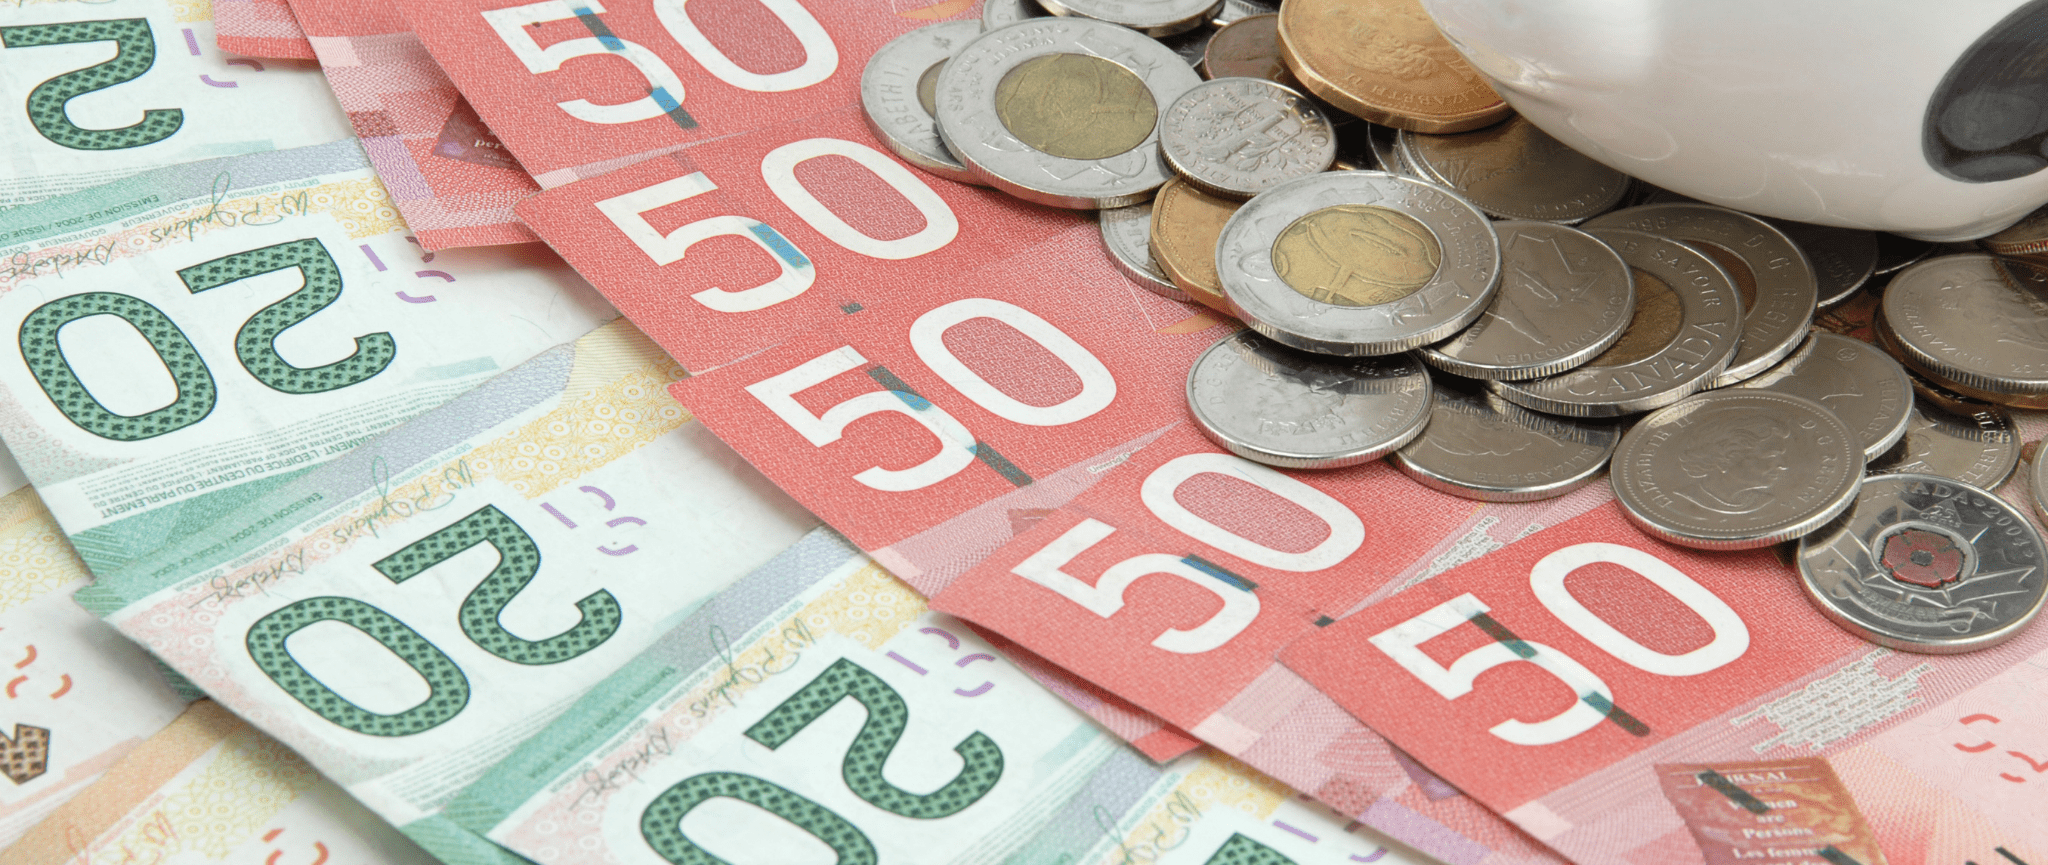 Monnaie canadienne incluant des billets de 20 $ et de 50 $ ainsi qu’une variété de pièces